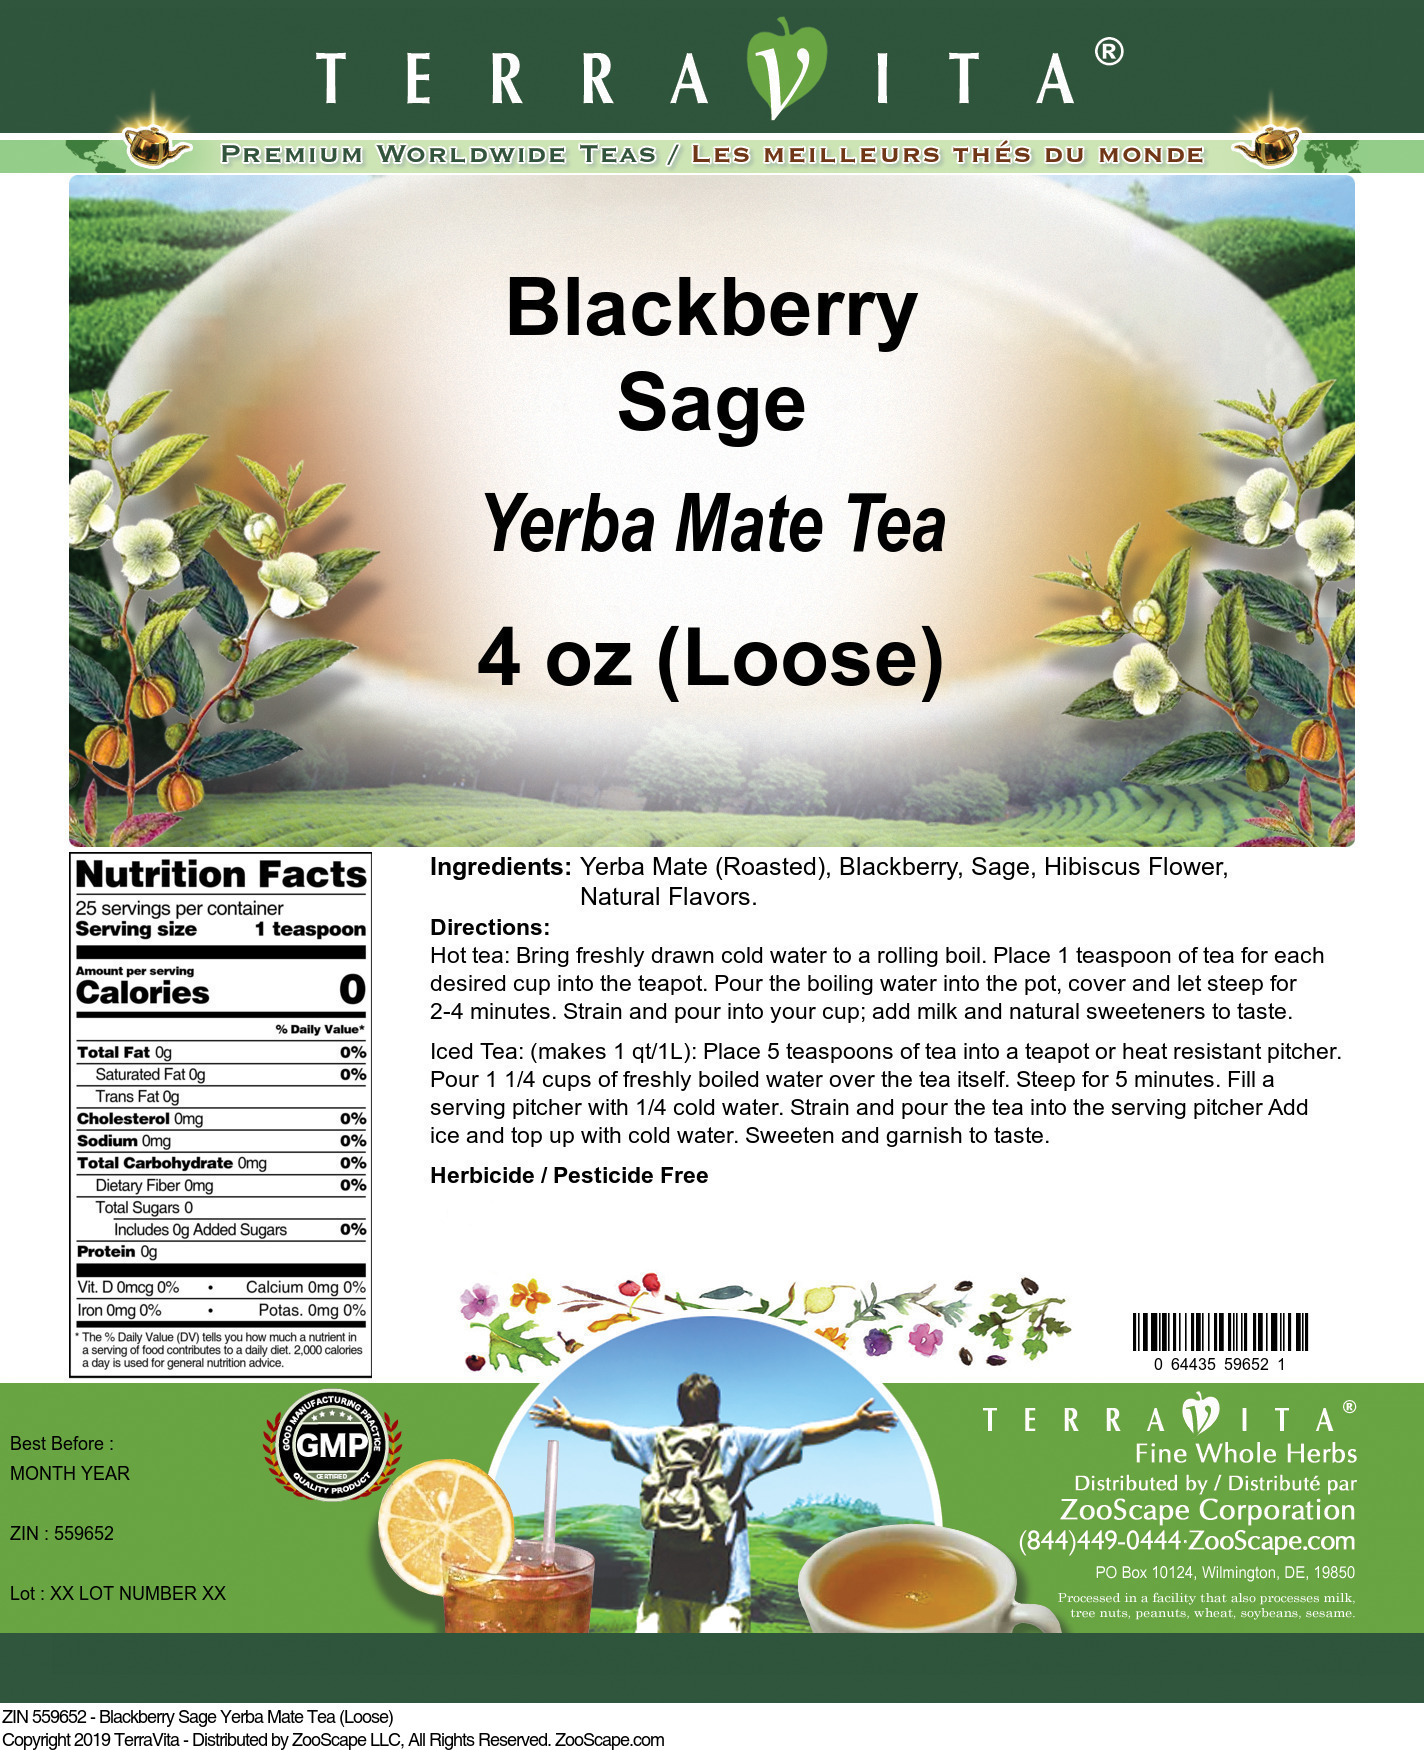 Blackberry Sage Yerba Mate Tea (Loose) - Label